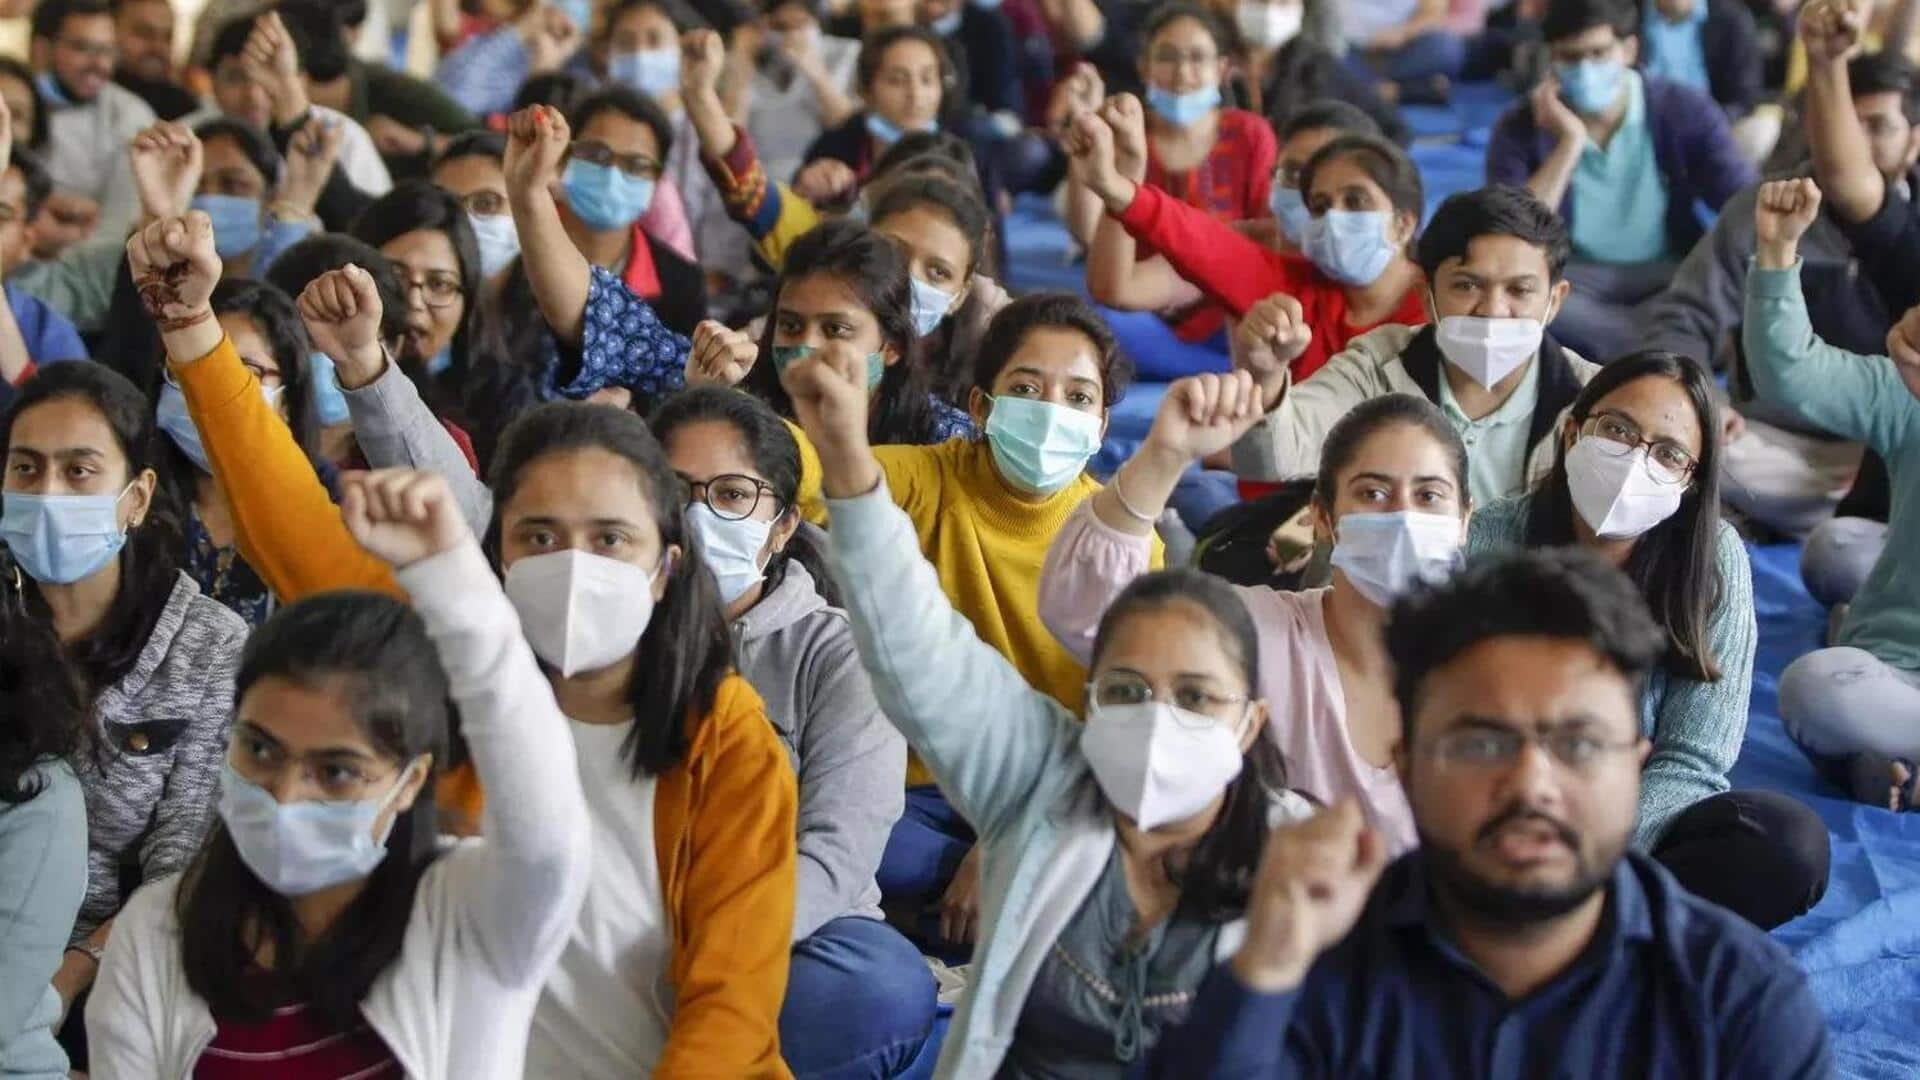 मध्य प्रदेश: राज्य के 13,000 सरकारी डॉक्टर अनिश्चितकालीन हड़ताल पर, इमरजेंसी सेवा और पोस्टमार्टम प्रभावित